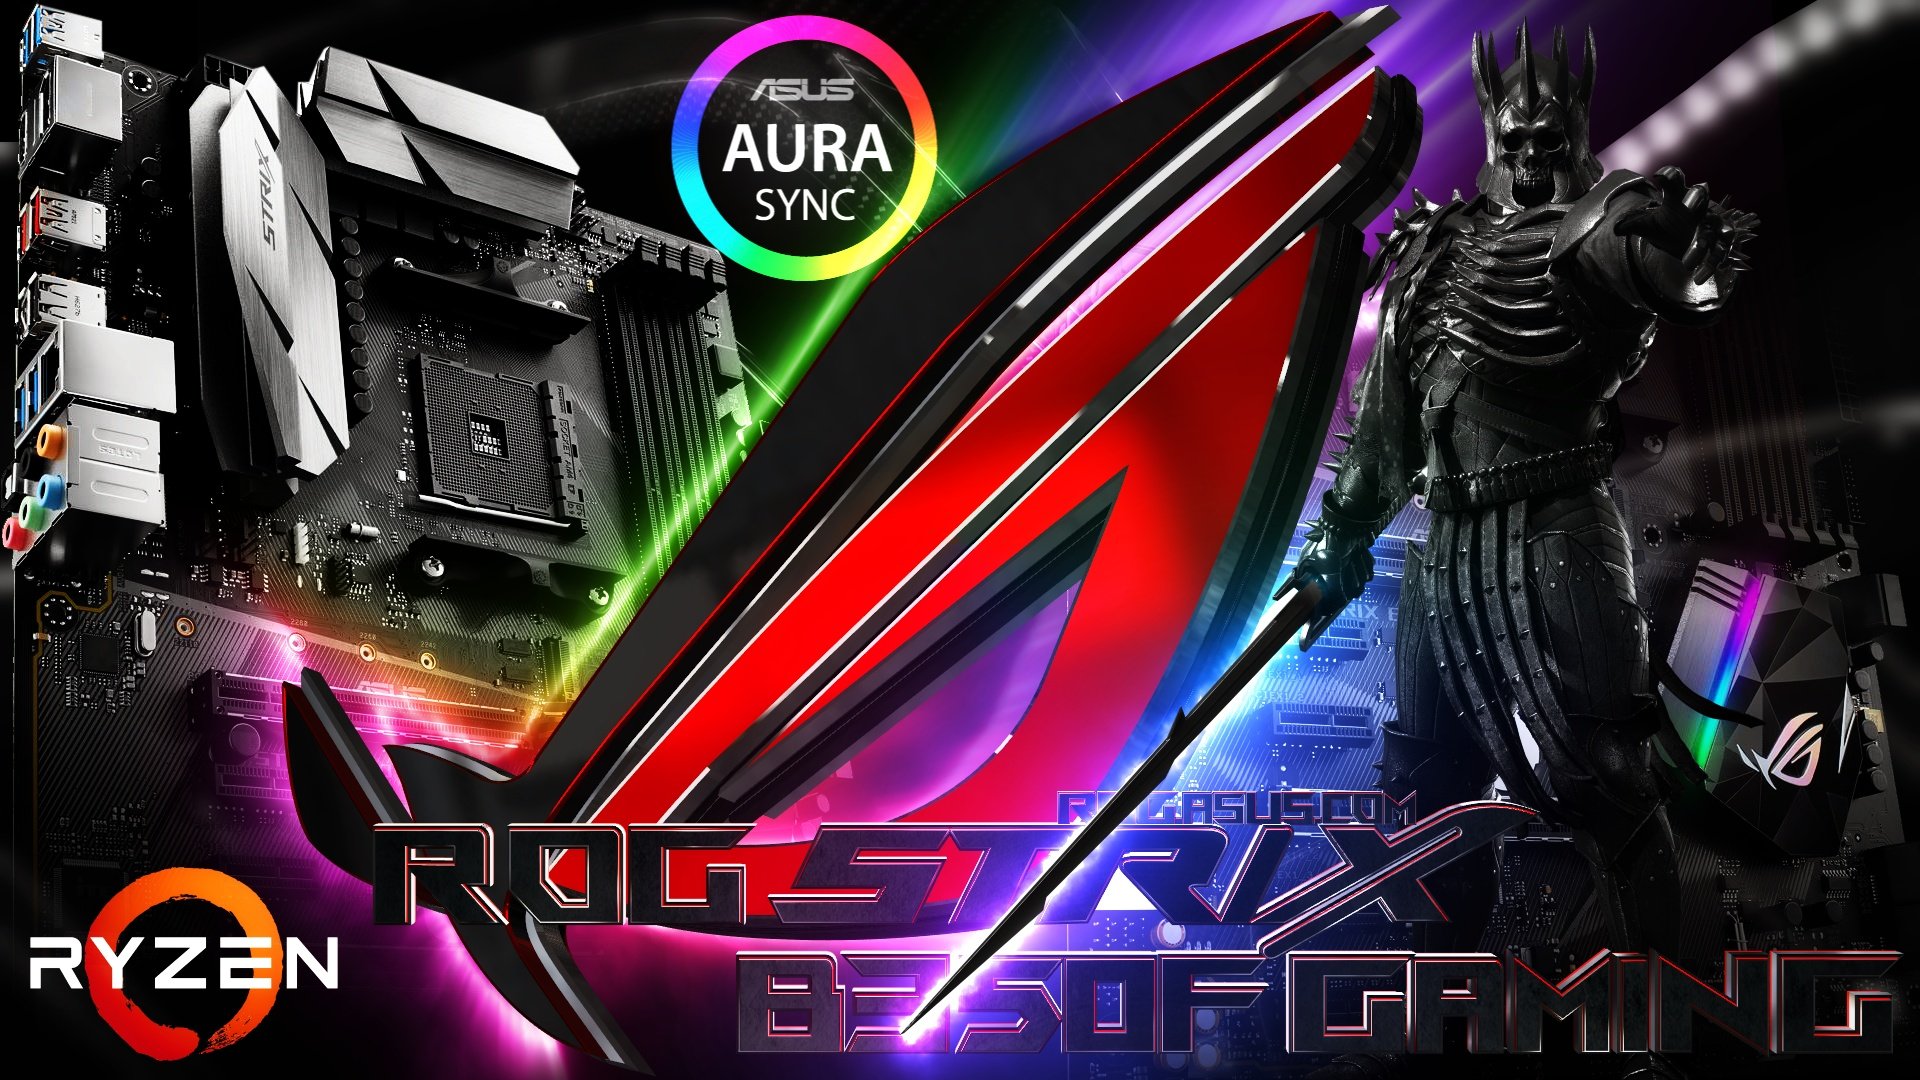 Игры для асус. ASUS ROG Strix обои. ASUS ROG 7 Ultimate. Обои на ПК игровые асус.